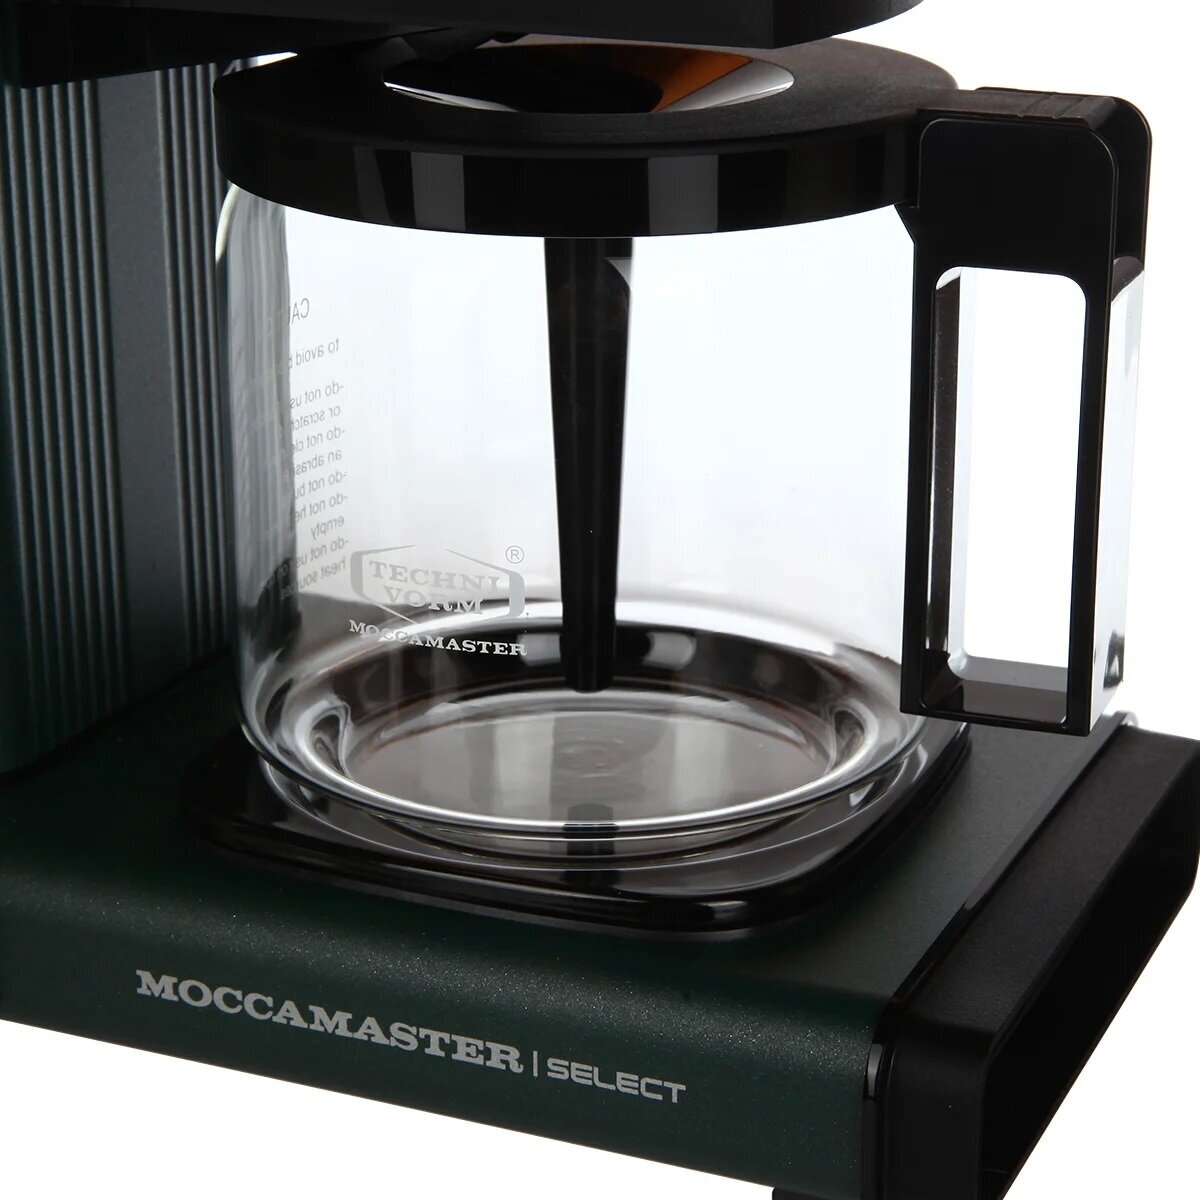 Кофеварка Moccamaster KBG 741 Select, forest green 53991 и упаковка кофе Флоу (10 шт. по 60 гр.) - фотография № 4